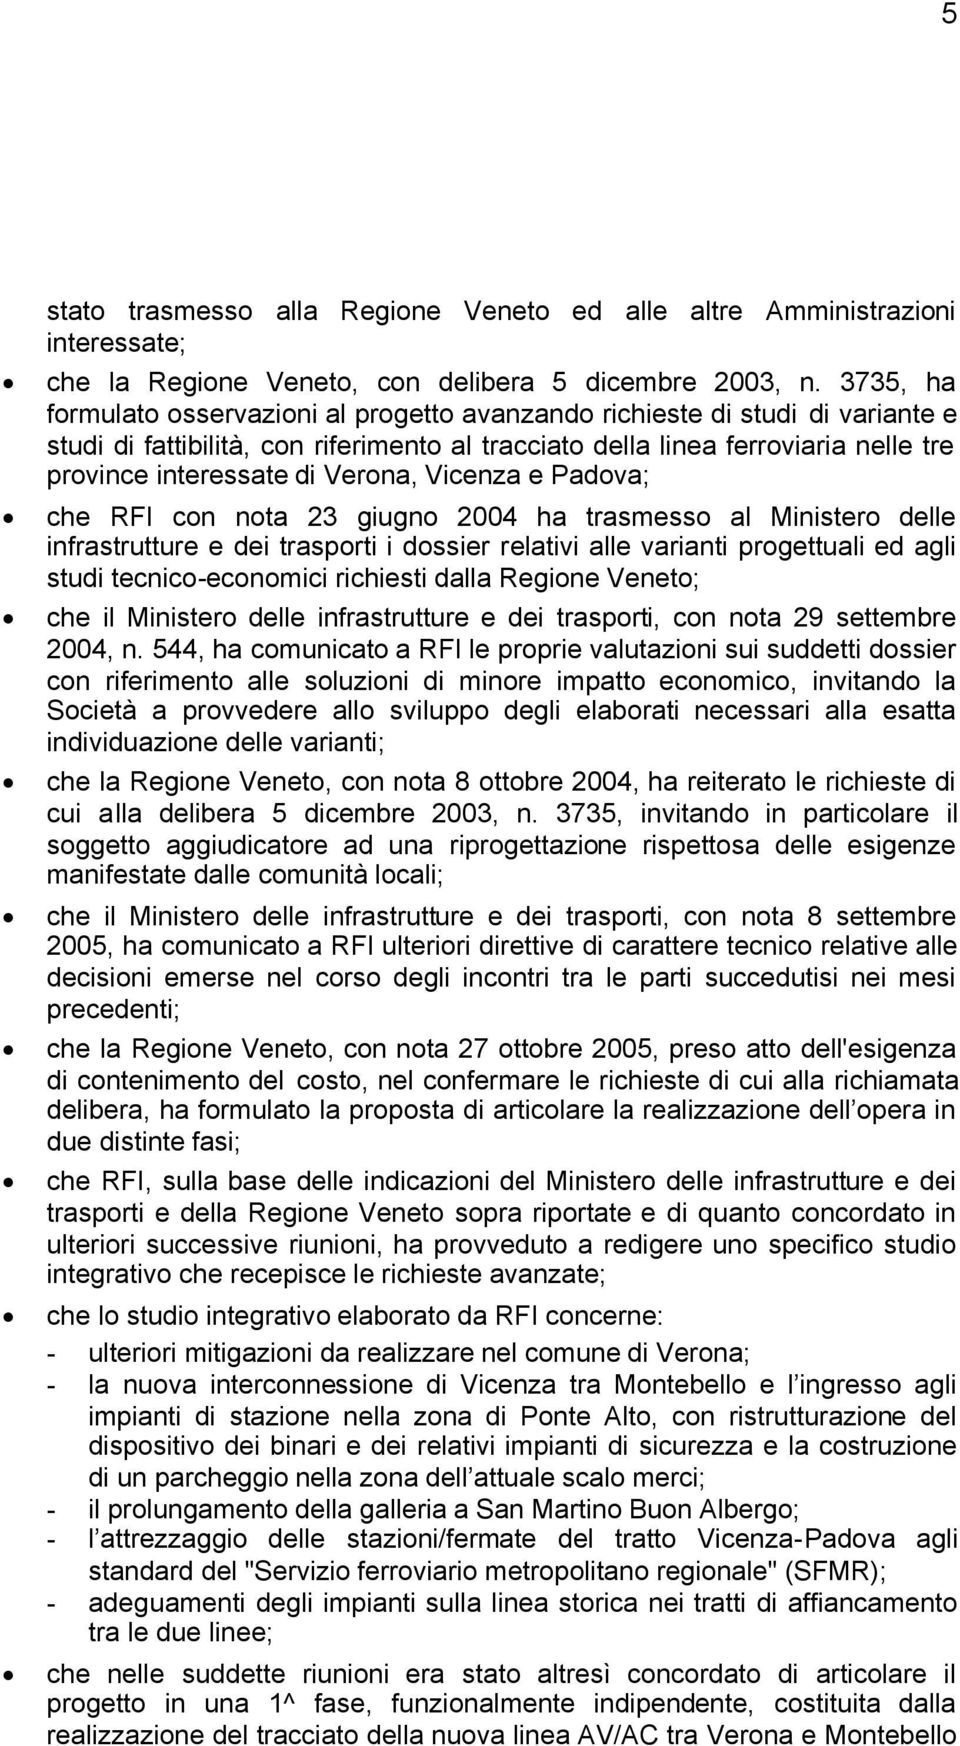 Verona, Vicenza e Padova; che RFI con nota 23 giugno 2004 ha trasmesso al Ministero delle infrastrutture e dei trasporti i dossier relativi alle varianti progettuali ed agli studi tecnico-economici